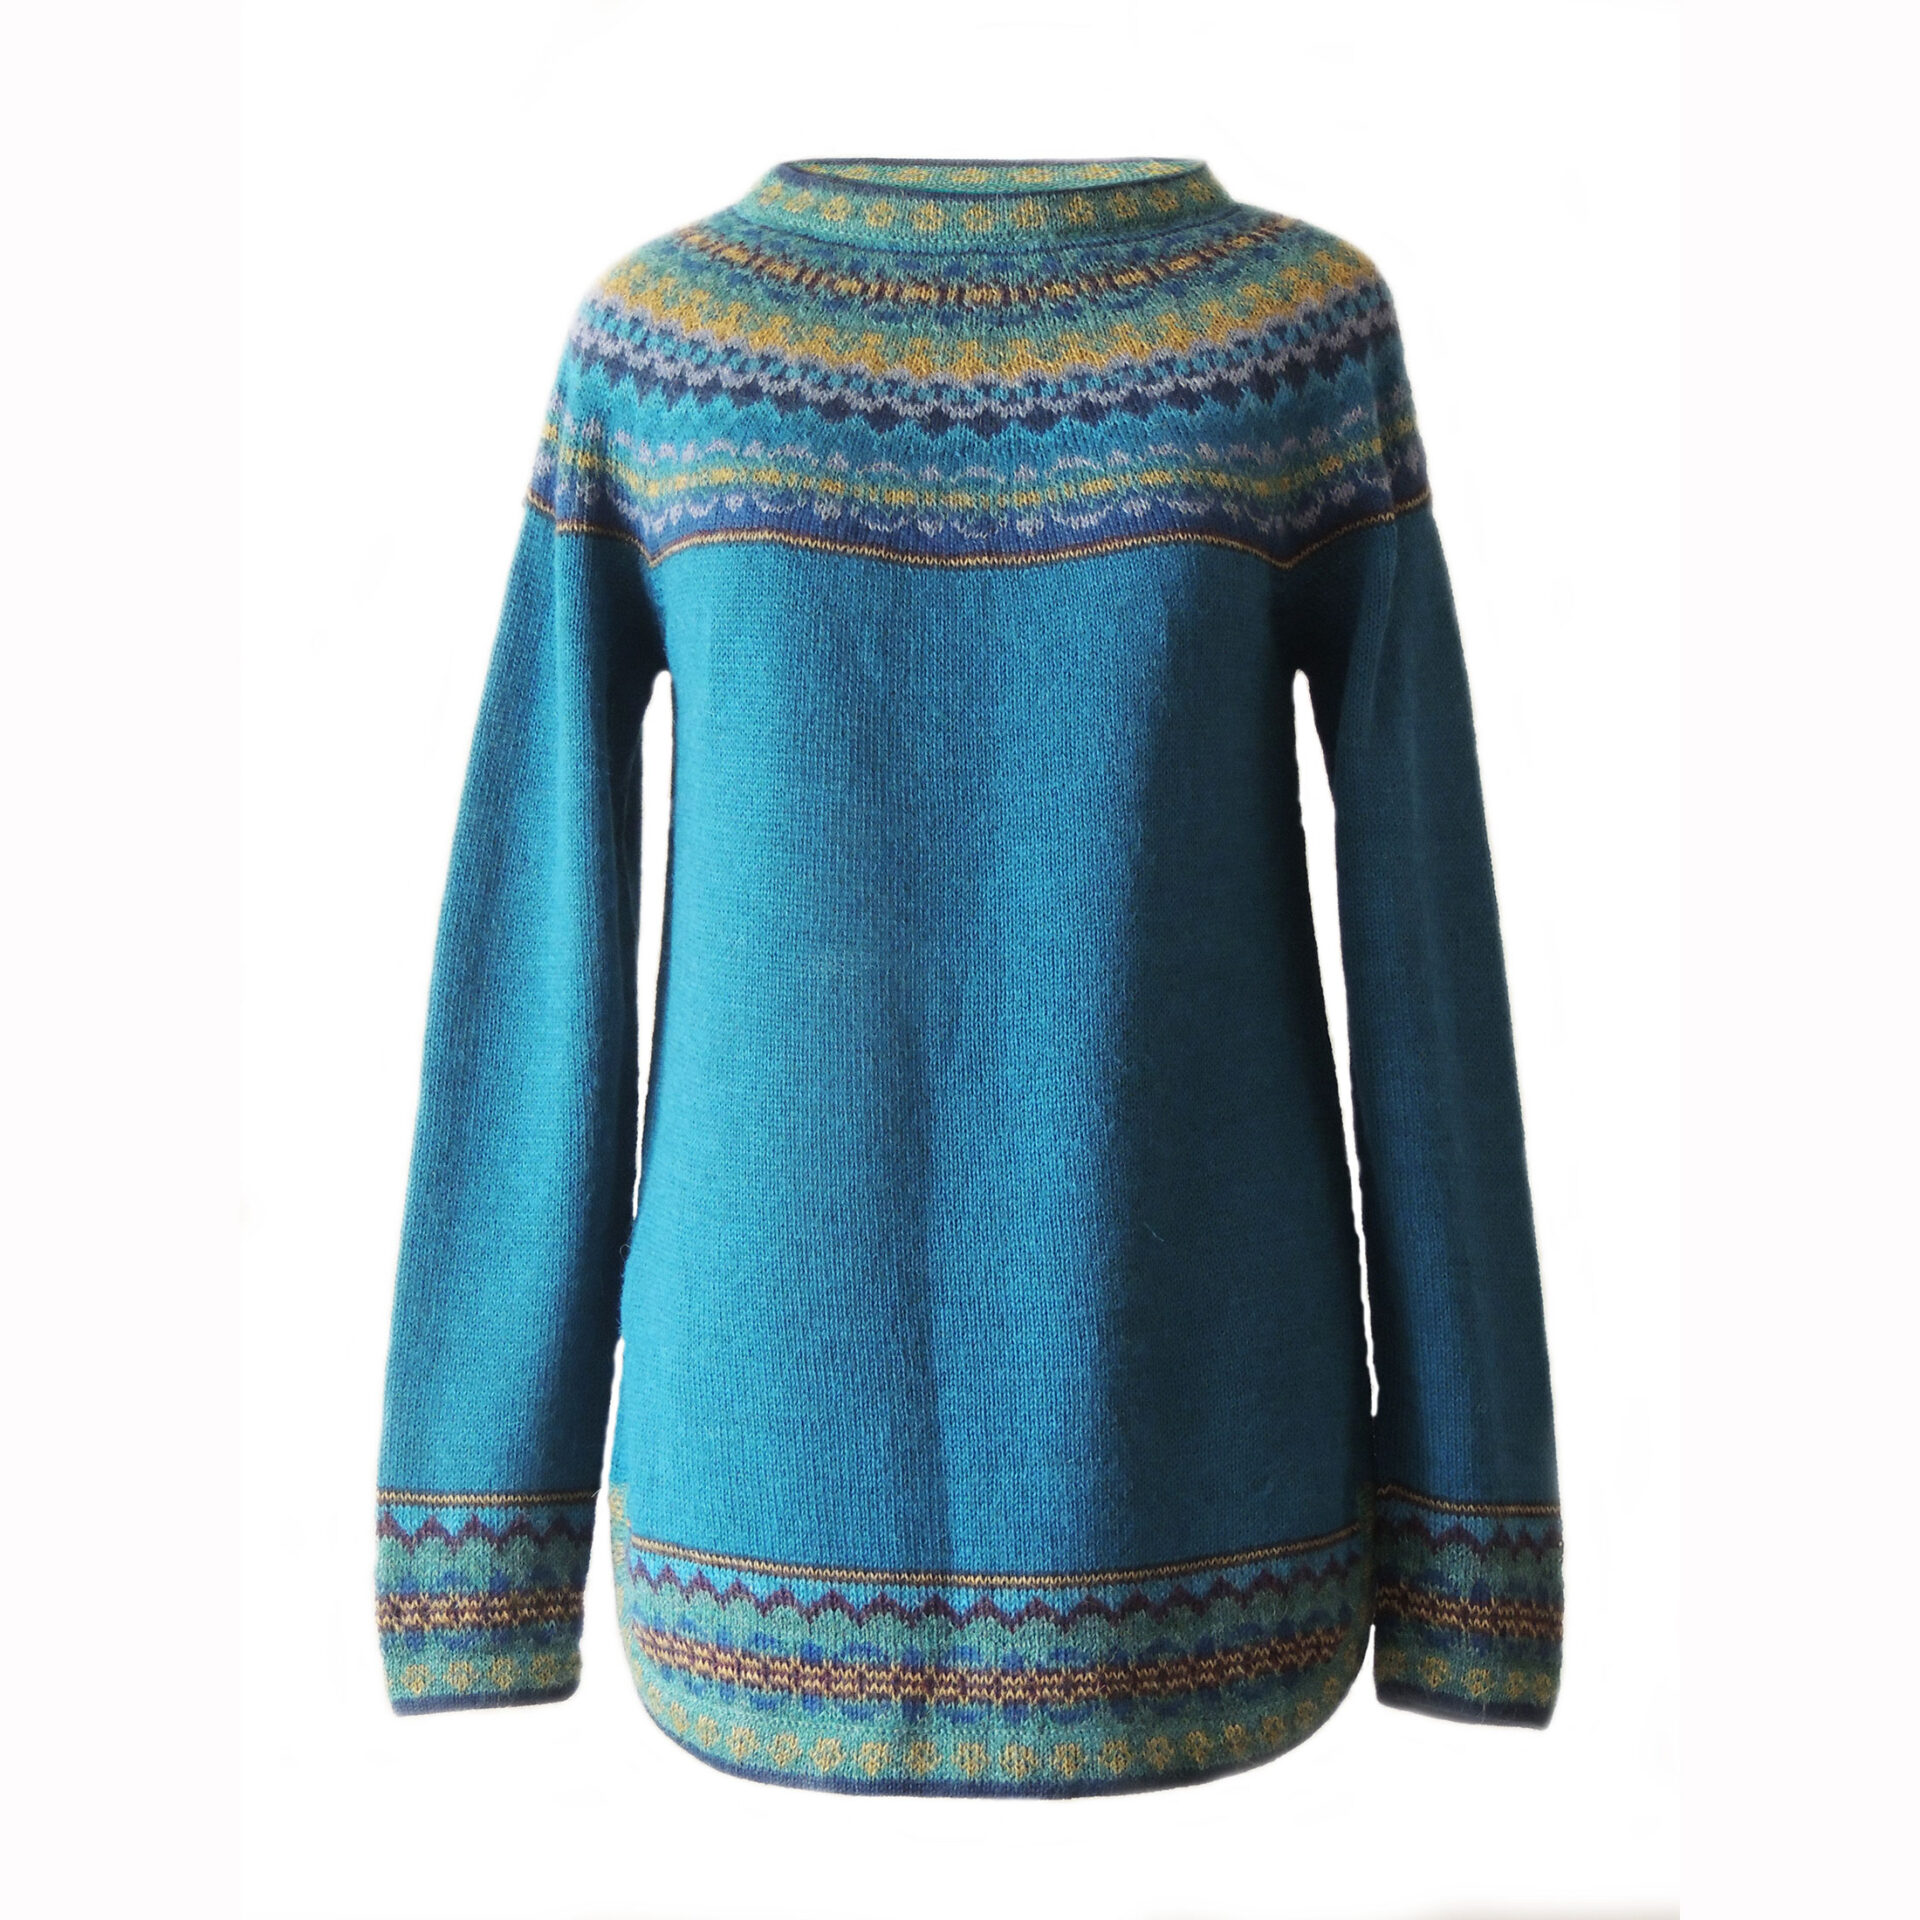 intern Boren Knooppunt 19-1608-01 Women's sweater with symmetrical patterns,100% alpaca – PopsFL  alpaca knitwear Peru wholesale